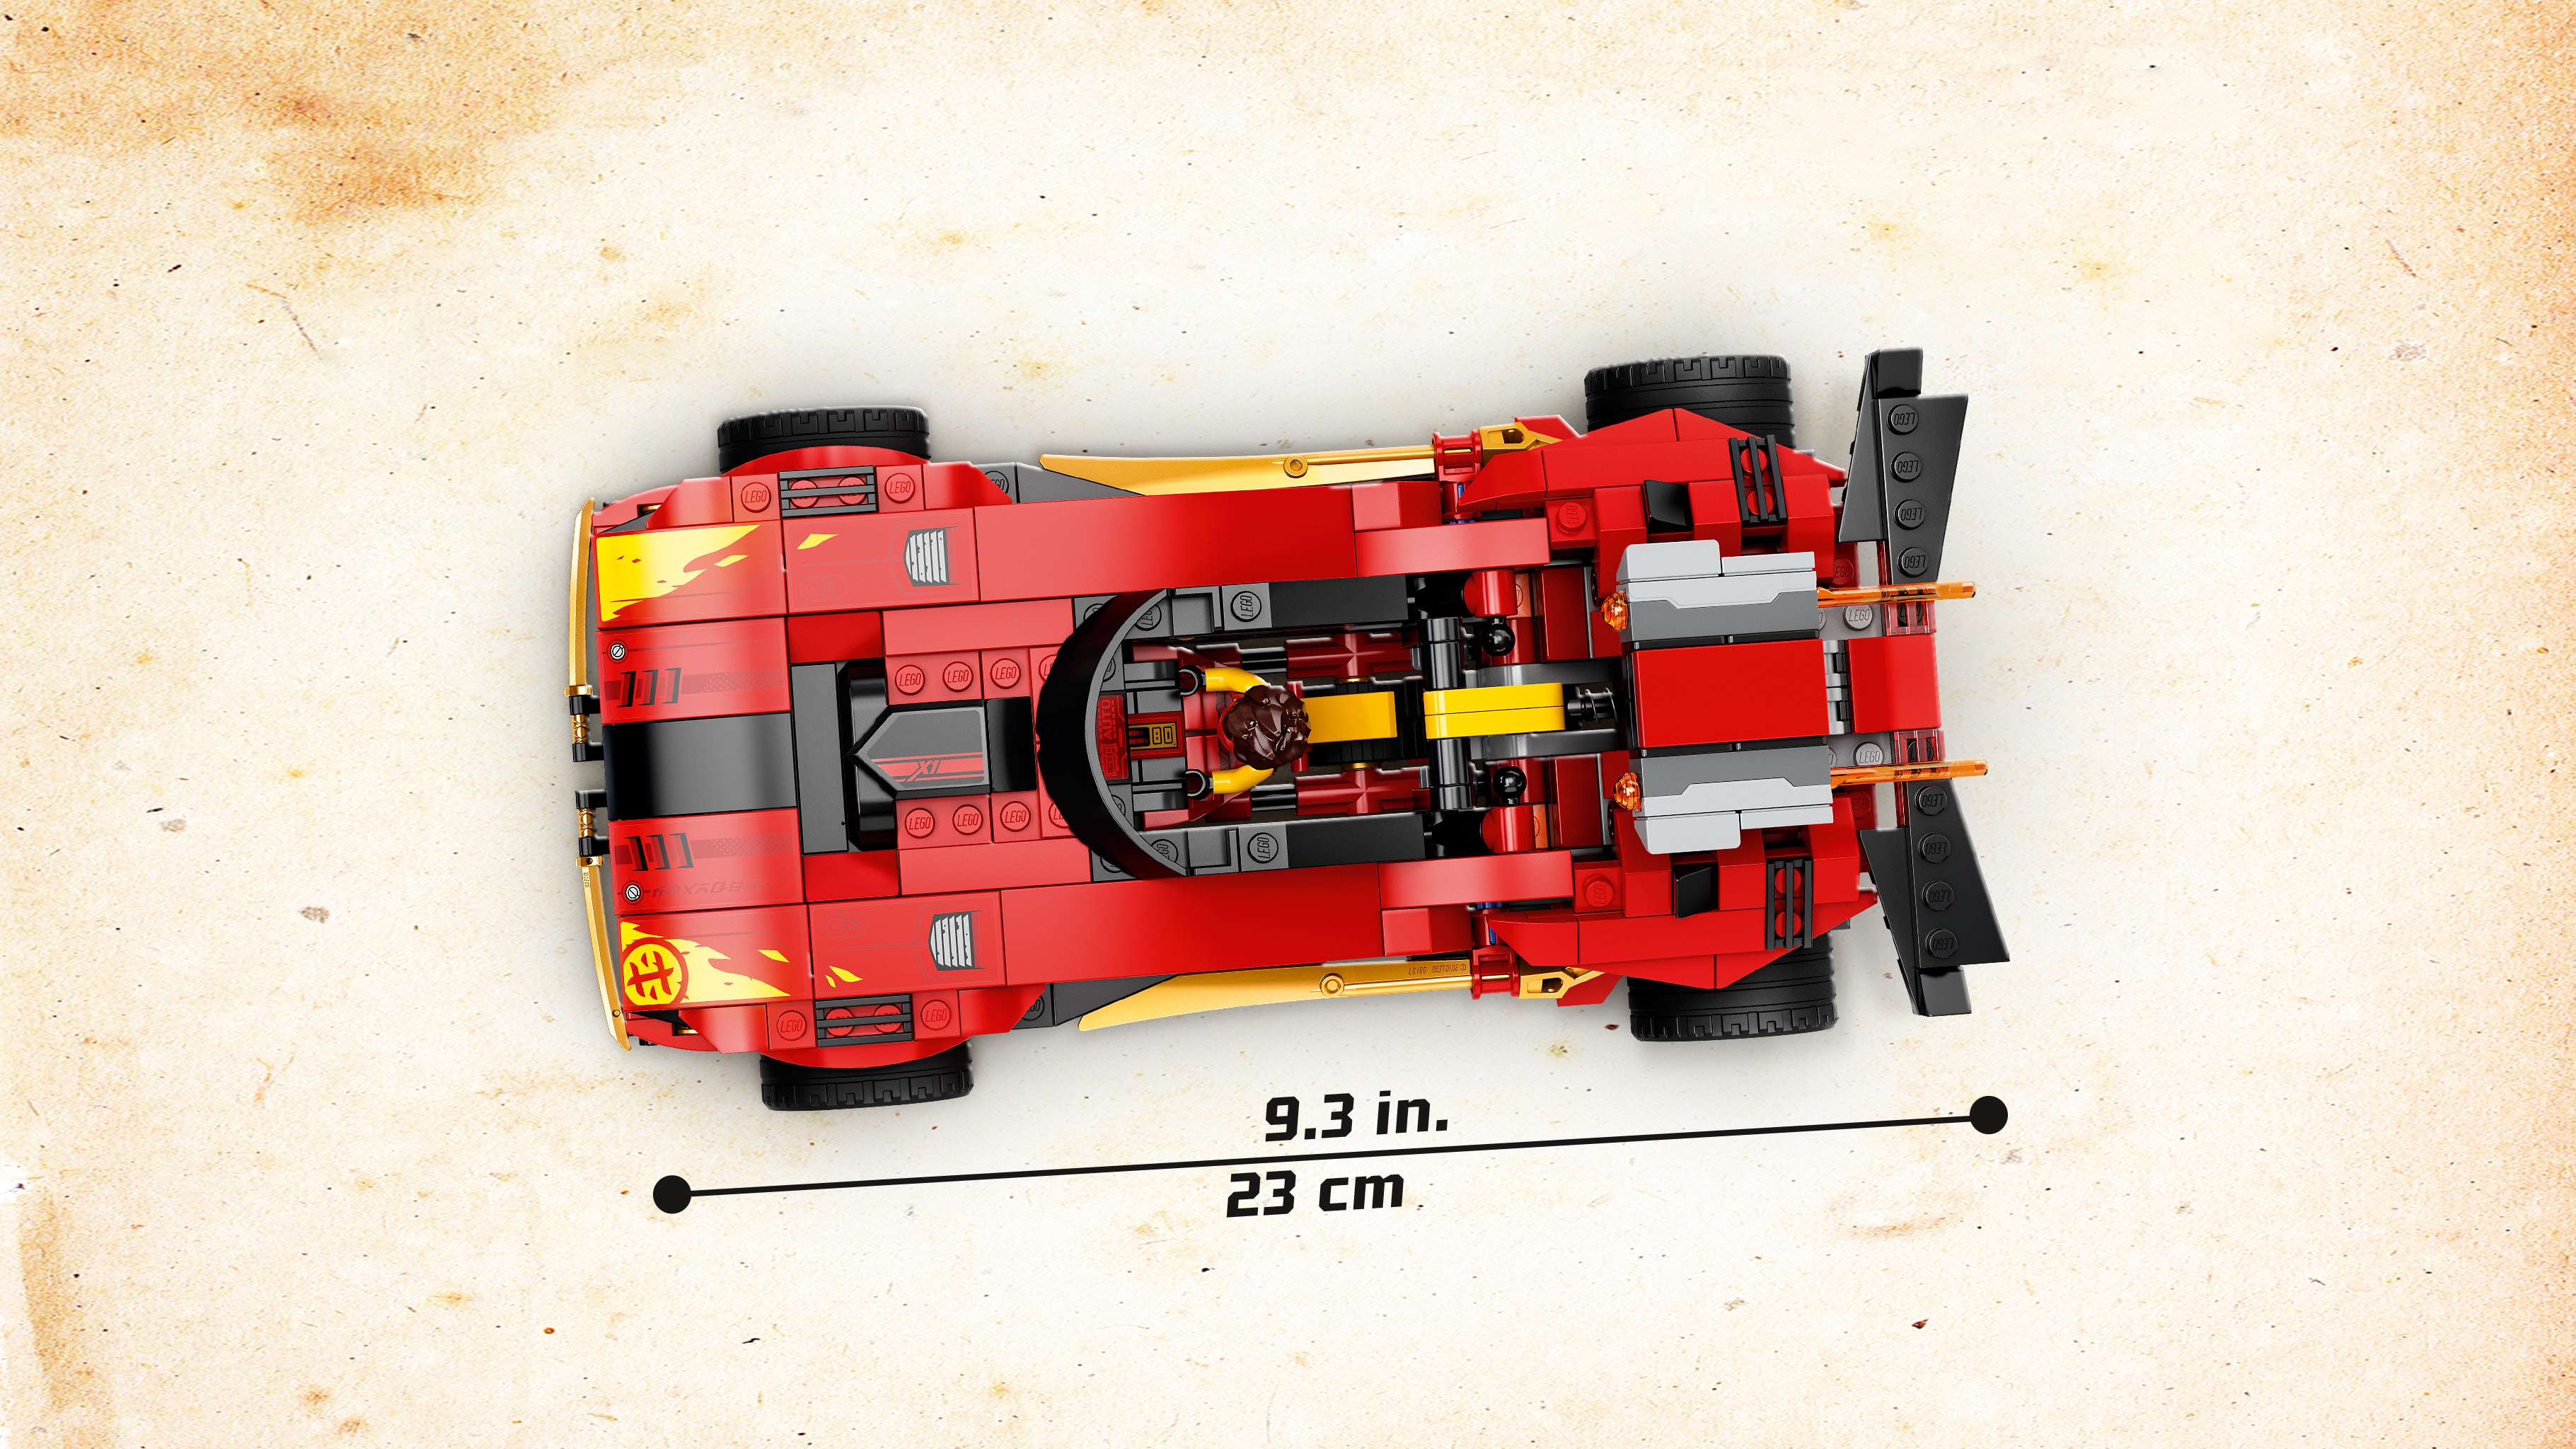 X-1 ニンジャ・チャージャー 71737 - レゴ®ニンジャゴー セット - LEGO